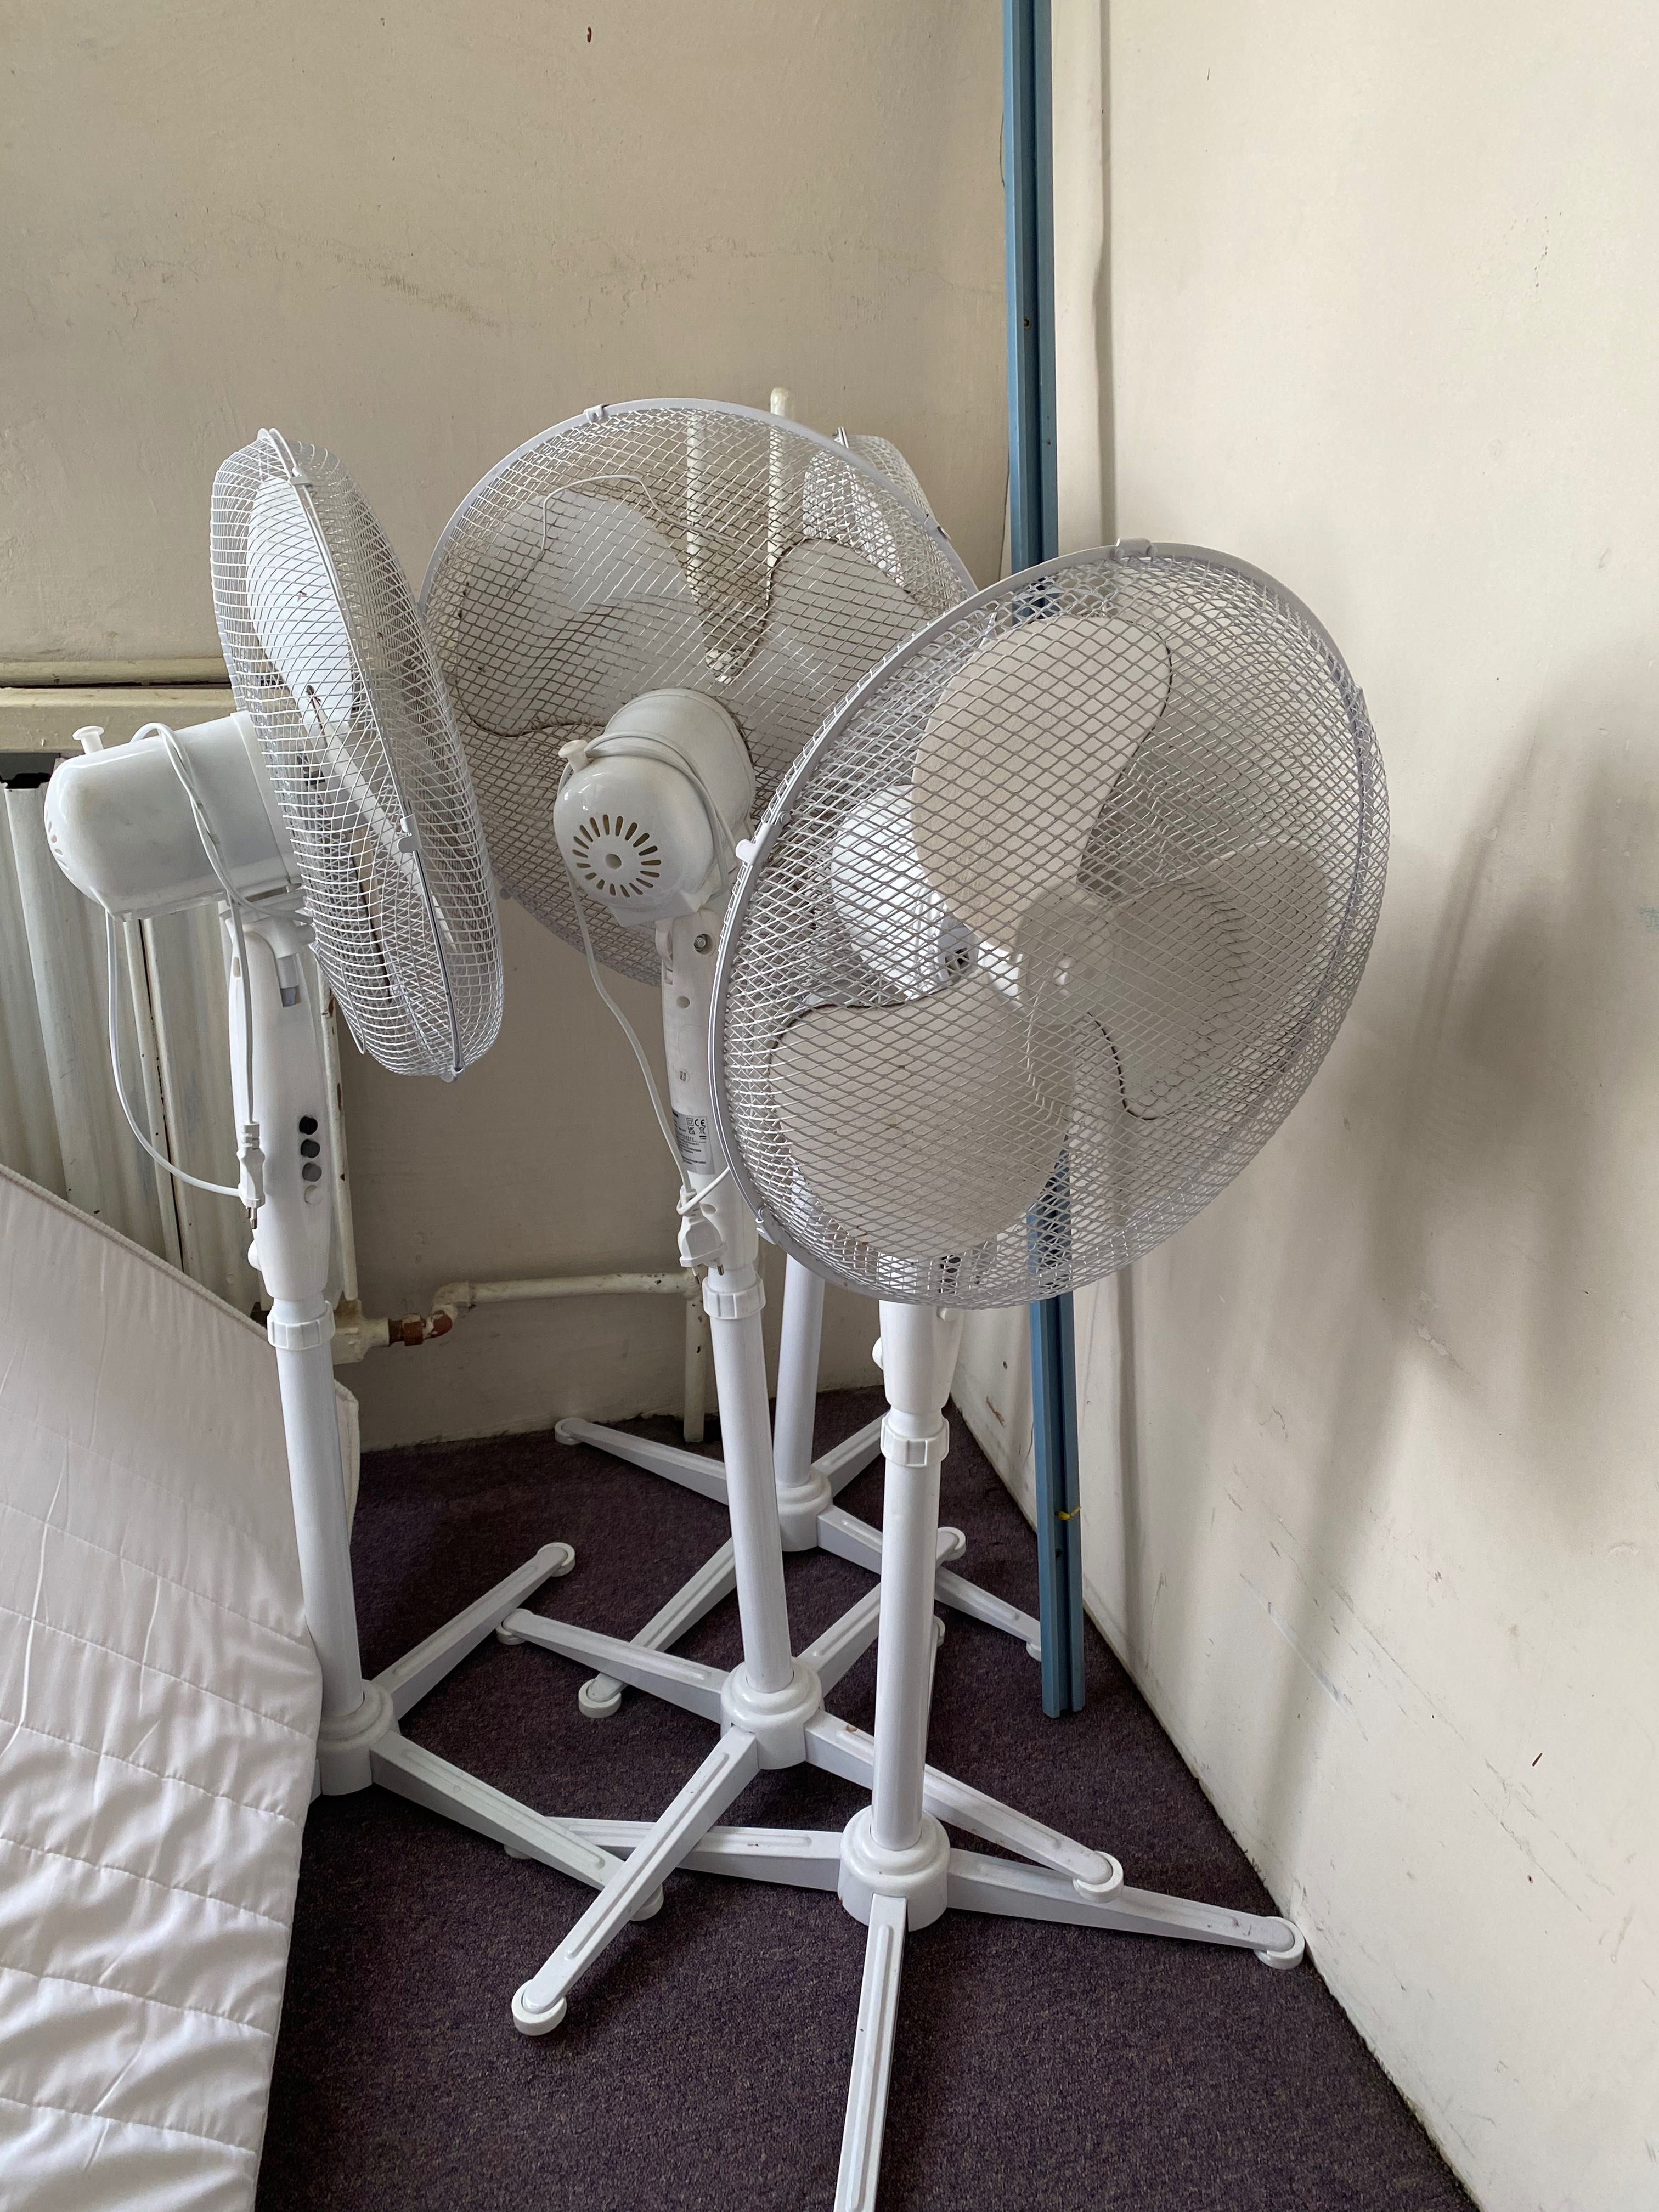 Ventilatoare diverse modele, ventilator cu picior